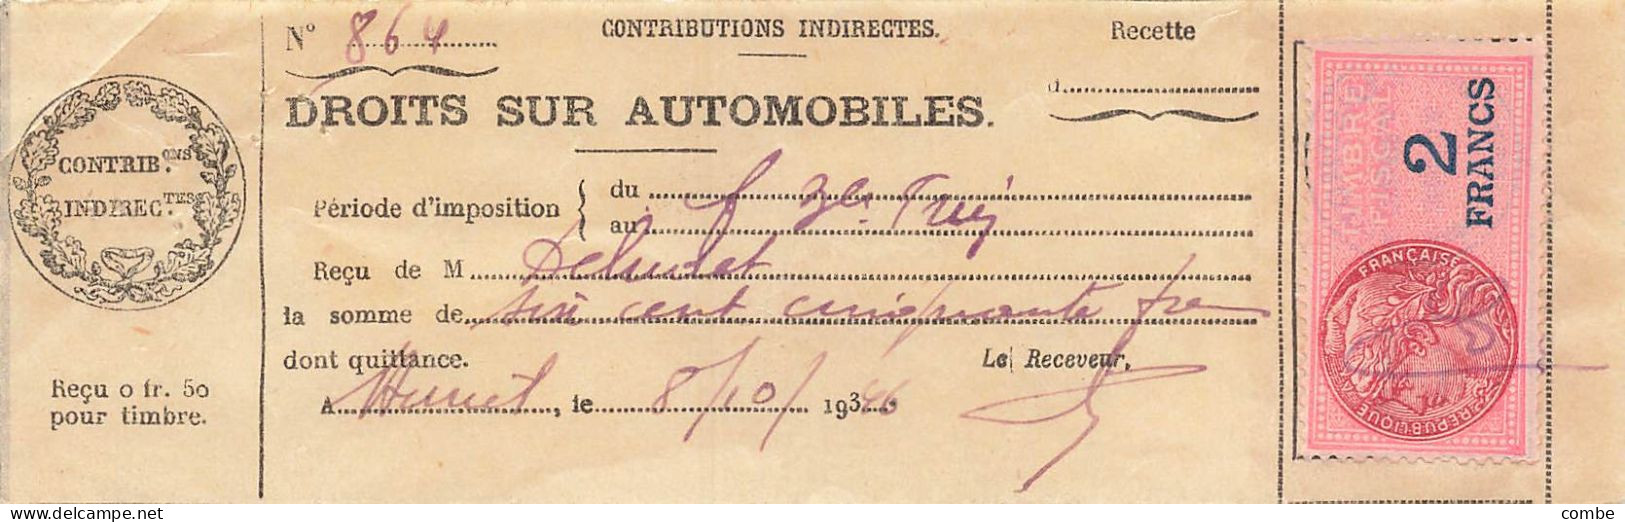 DROITS SUR AUTOMOBILES. VAILLY, AUXERRE. 1931,36,37 - Documentos Históricos